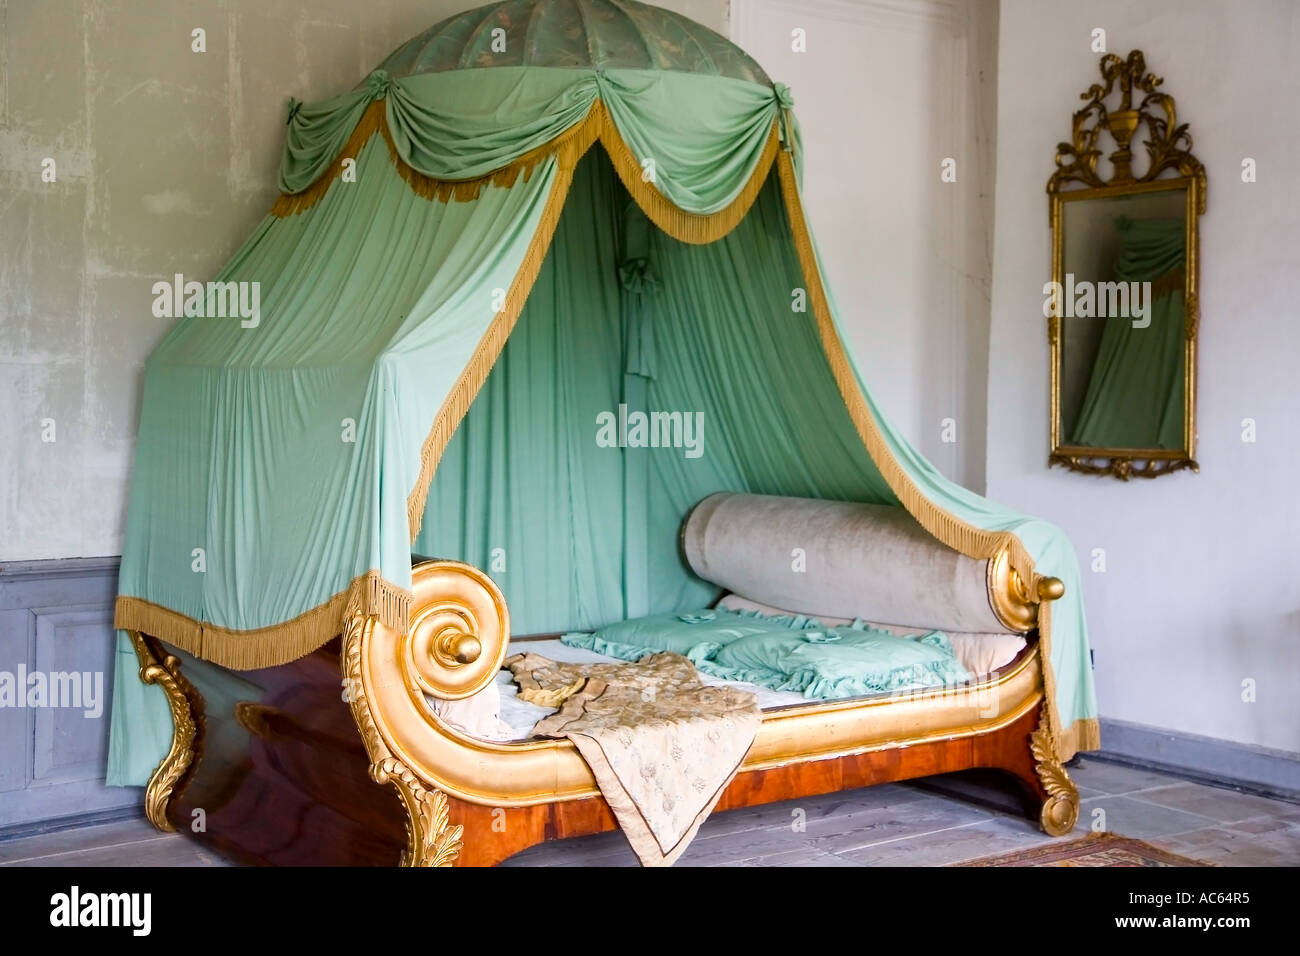 Letto matrimoniale con baldacchino in tessuto rosa in camera da letto Foto  stock - Alamy